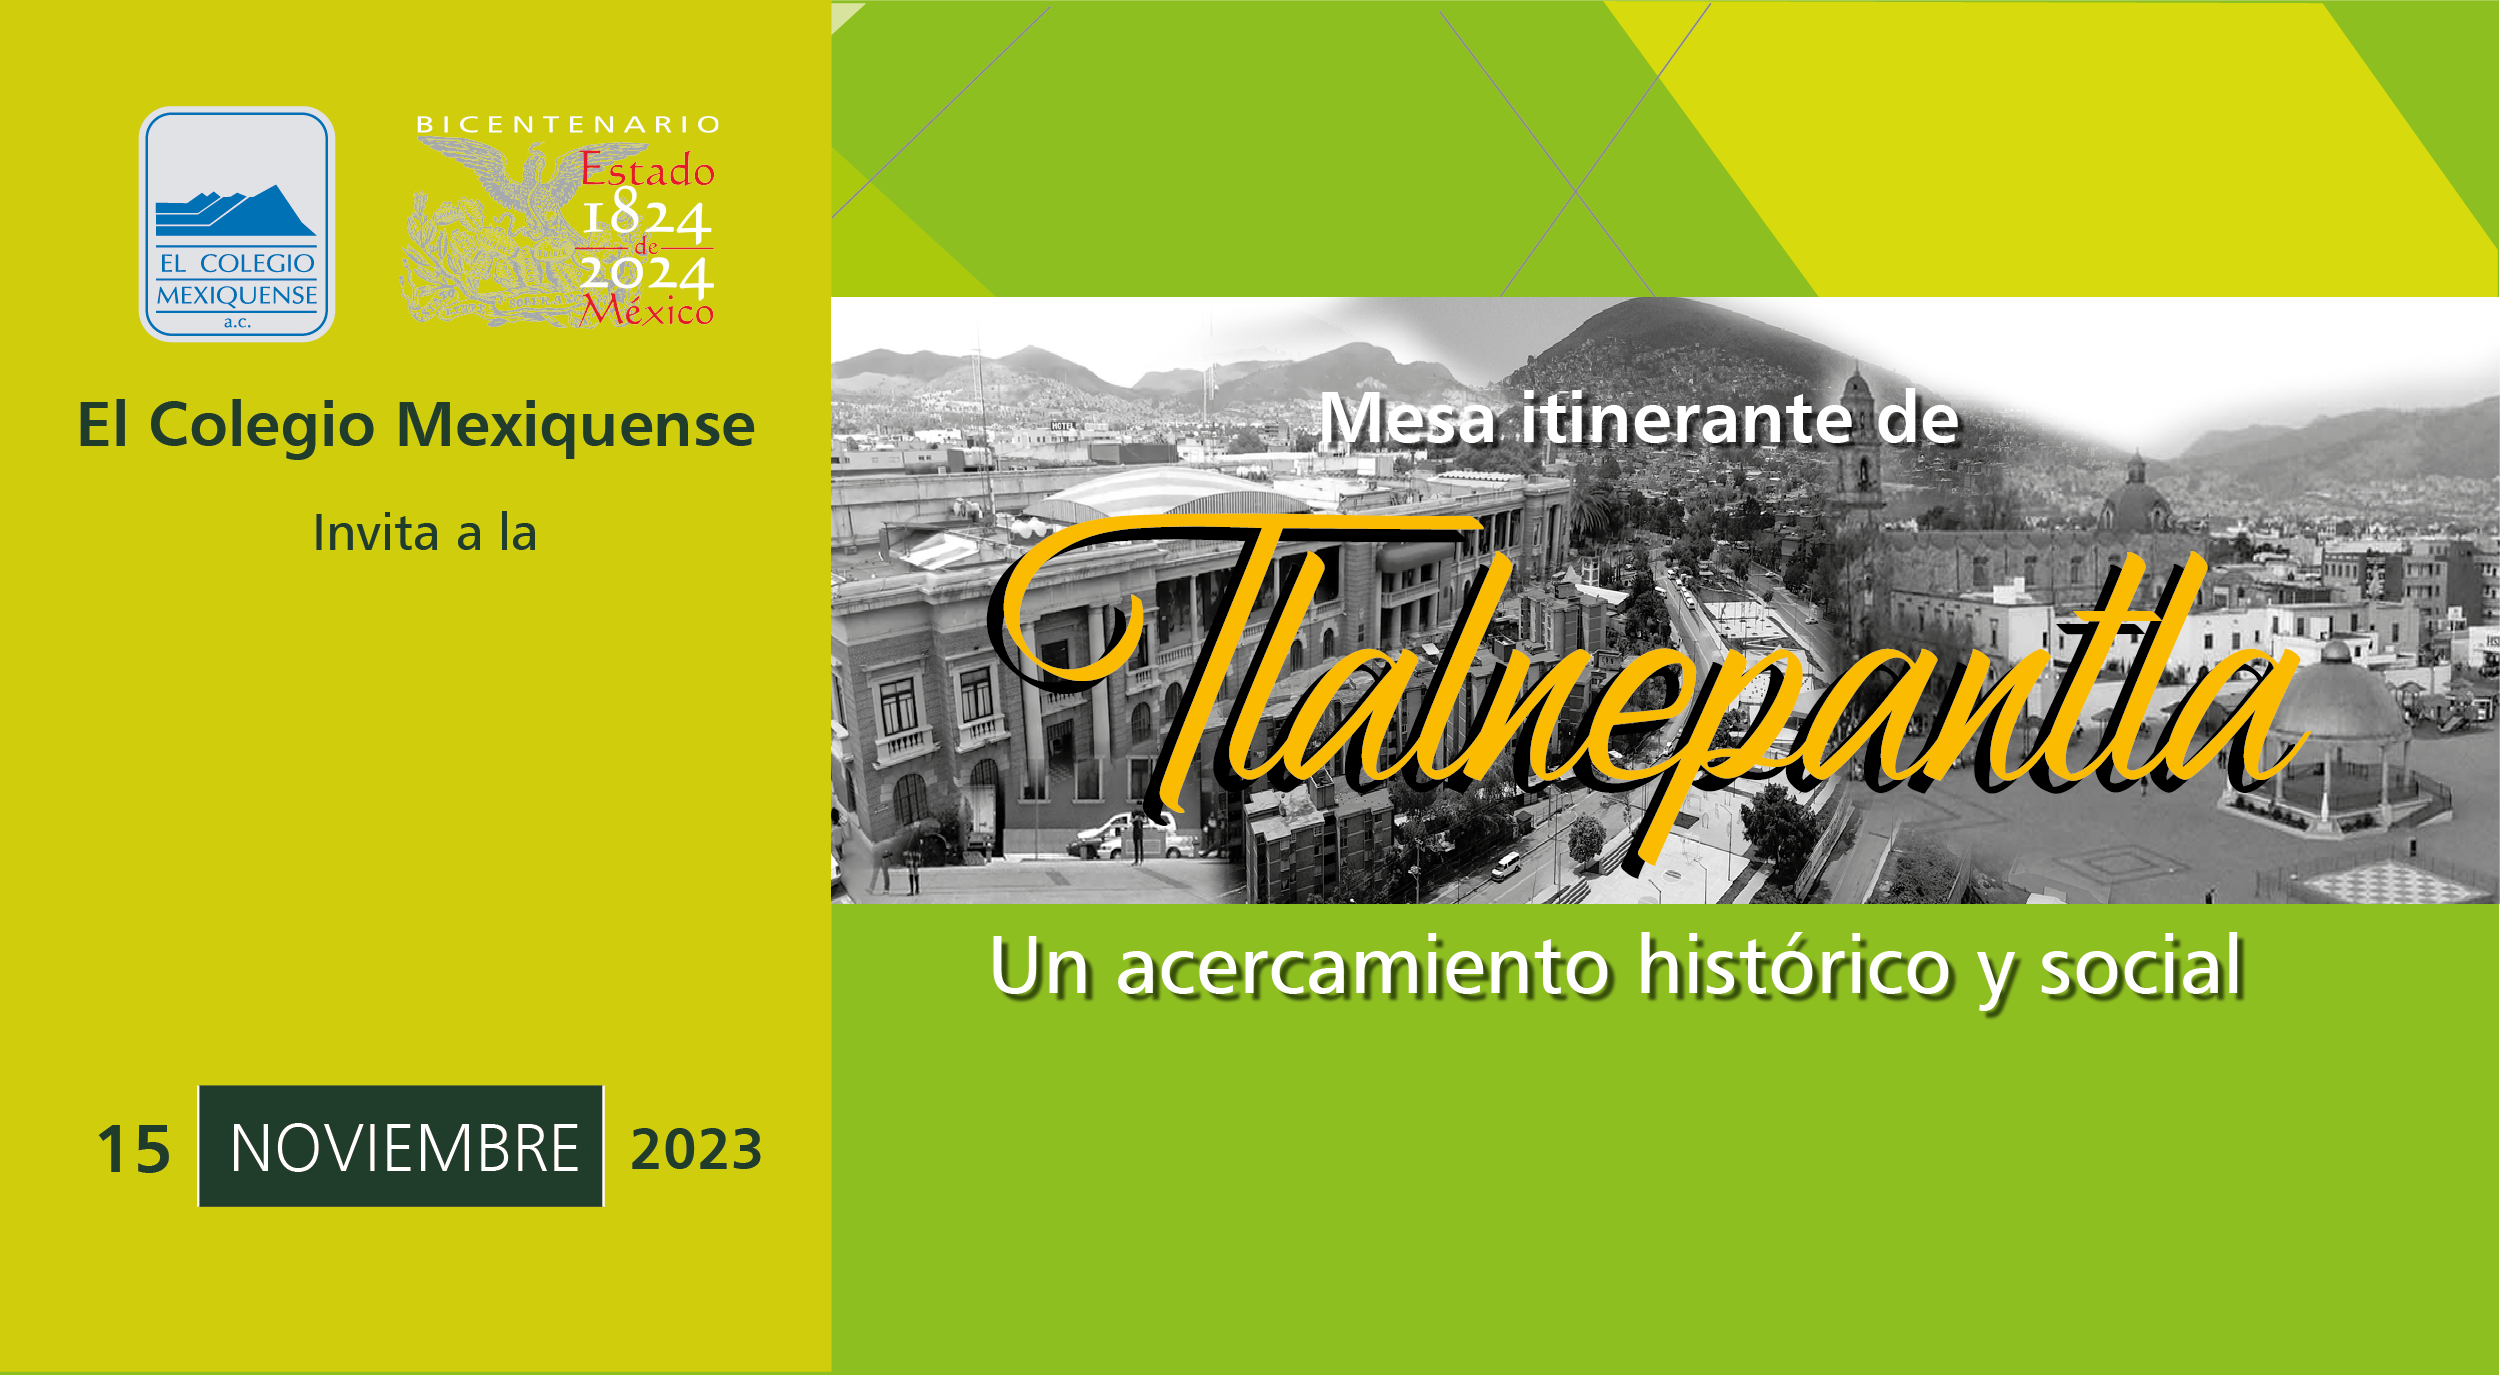 Mesa itinerante de Tlalnepantla. Un acercamiento histórico y social